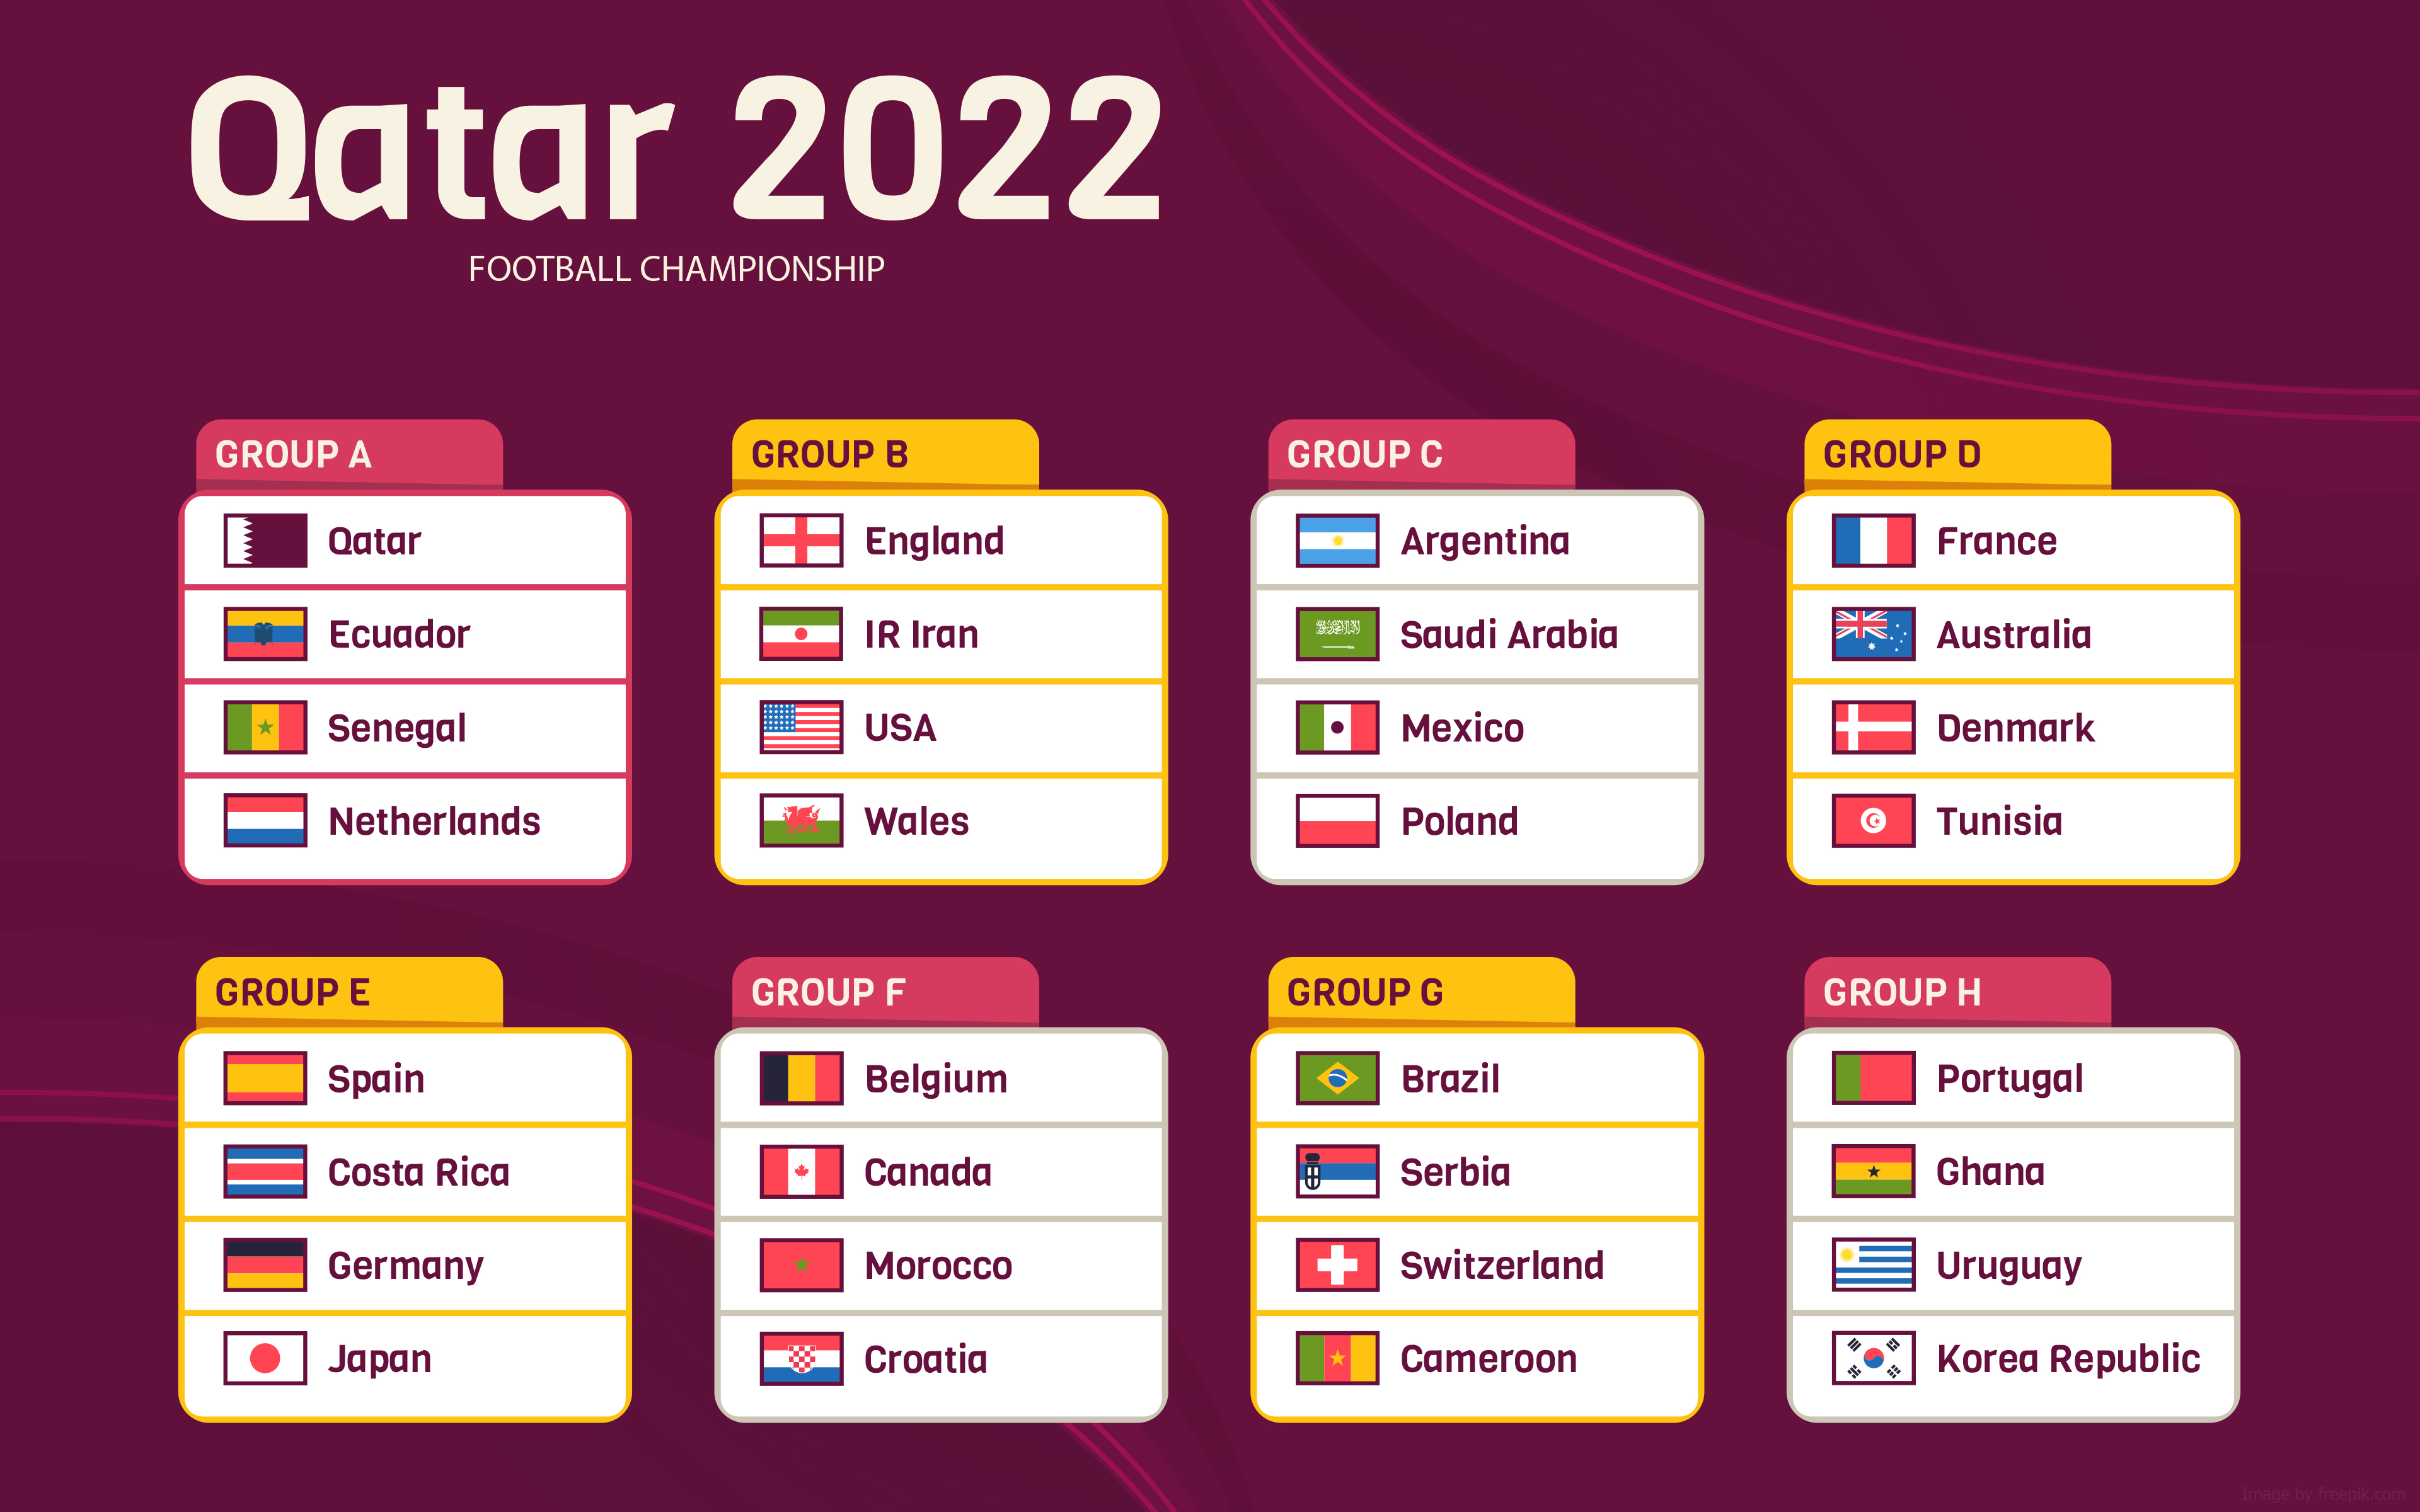 FIFA World Cup Qatar 2022 027 Mistrzostwa Swiata w Pilce Noznej Katar 2022, Grupy